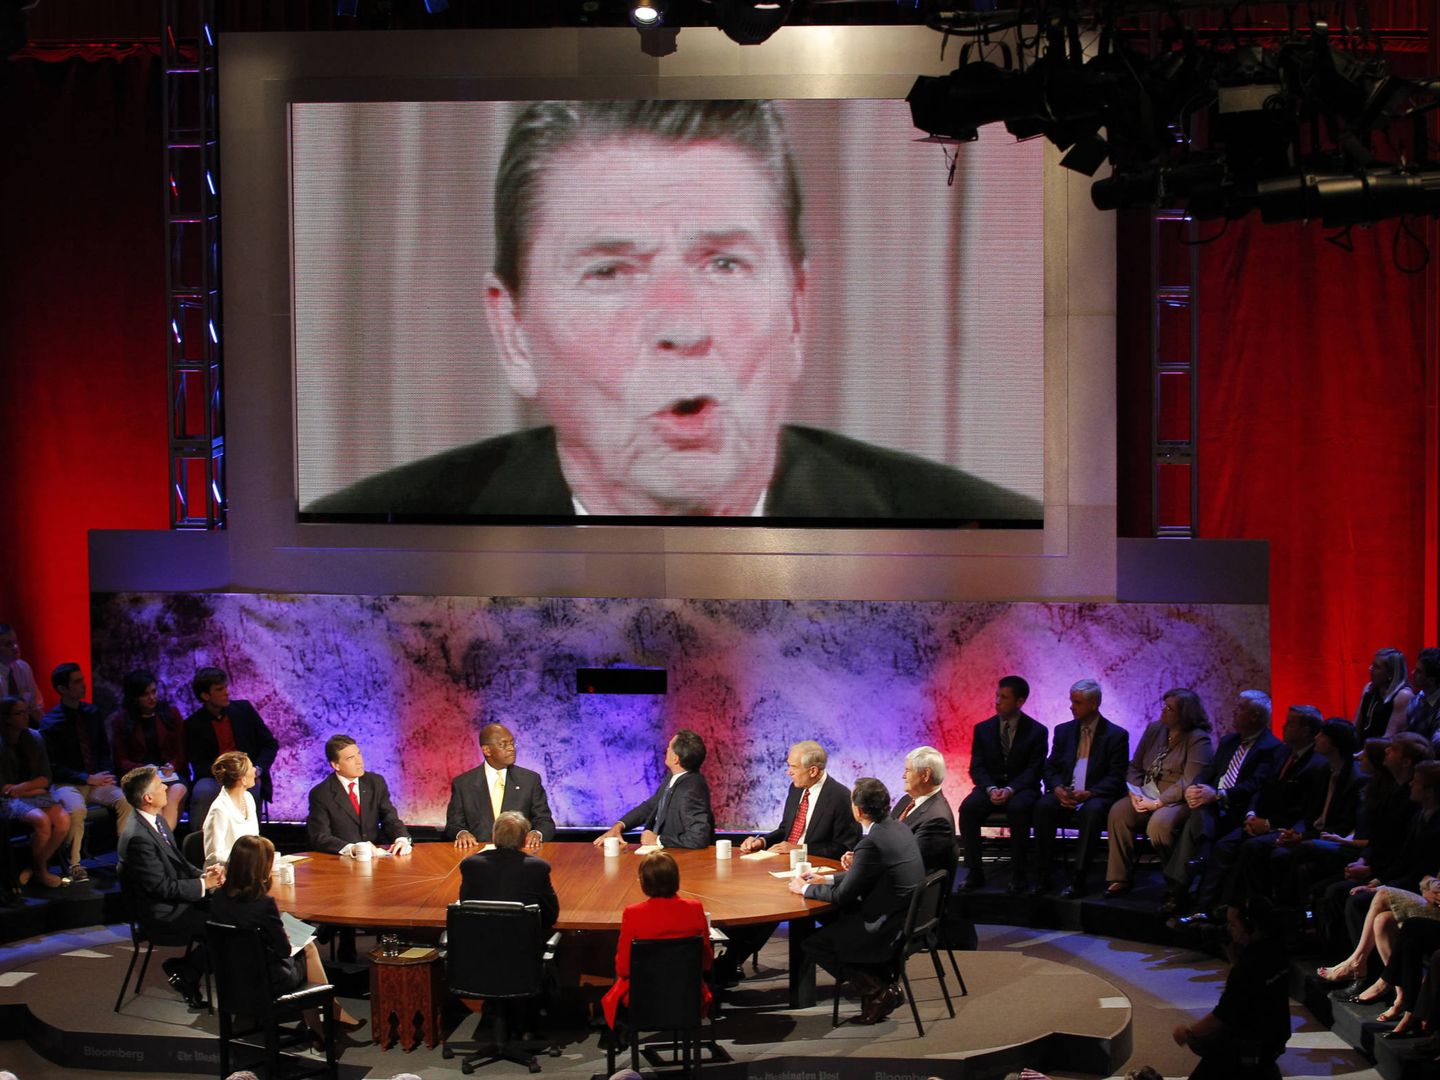 Un video del ex presidente Ronald Reagan sobre impuestos, proyectado en un debate entre candidatos republicanos a la presidencia, en el Darmouth College, en Hanover, New Hampshire, en octubre de 2011. (Reuters)